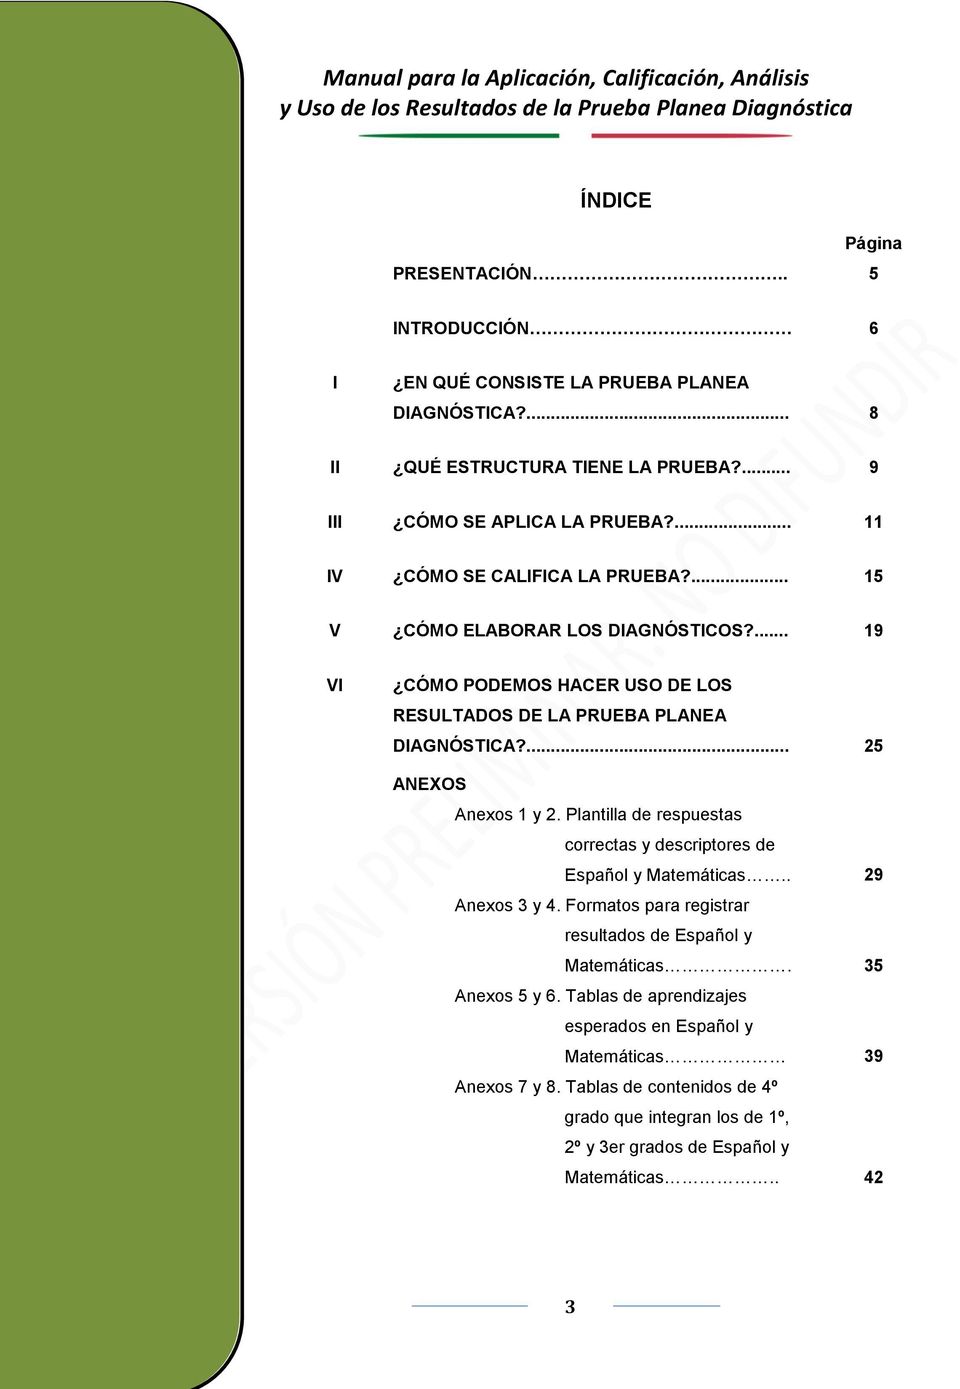 ... 25 ANEXOS Anexos 1 y 2. Plantilla de respuestas correctas y descriptores de Español y Matemáticas.. 29 Anexos 3 y 4.